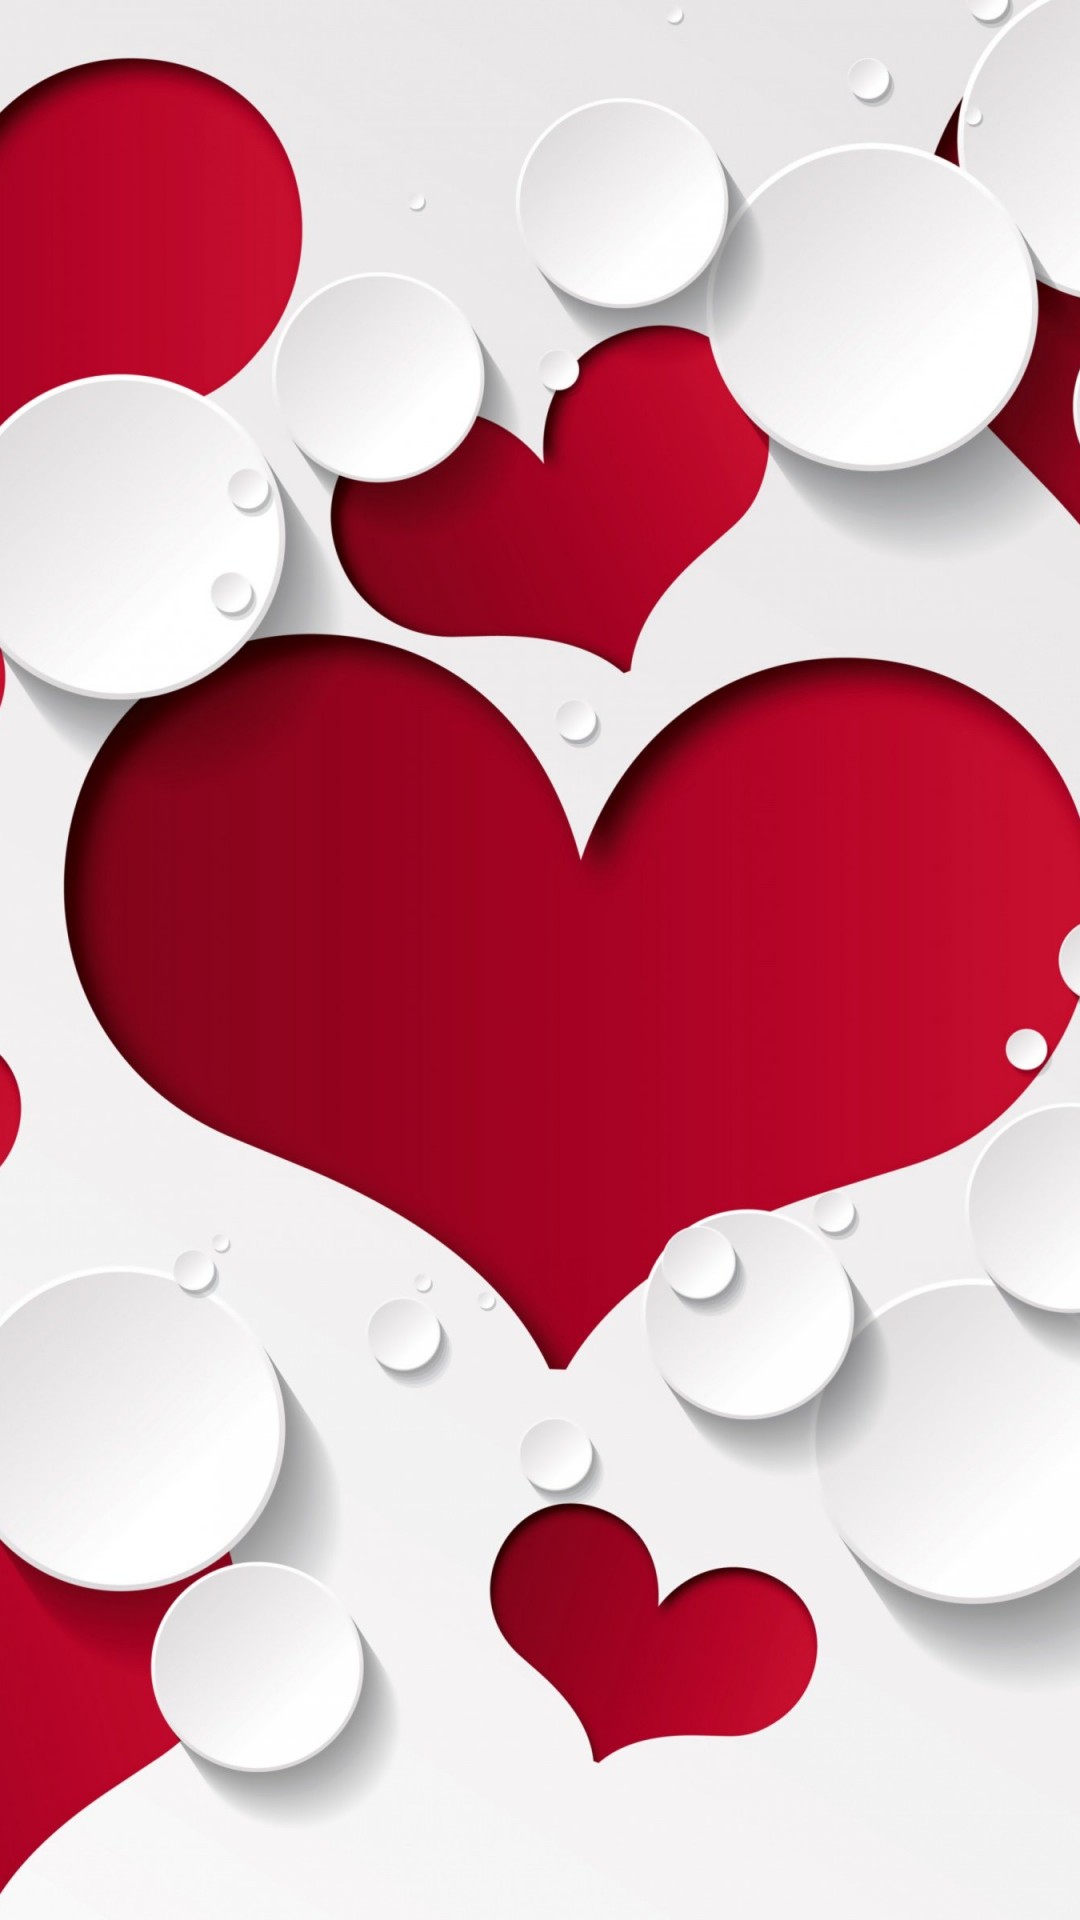 Love Heart Shaped Pattern Wallpaper for Google Nexus 5